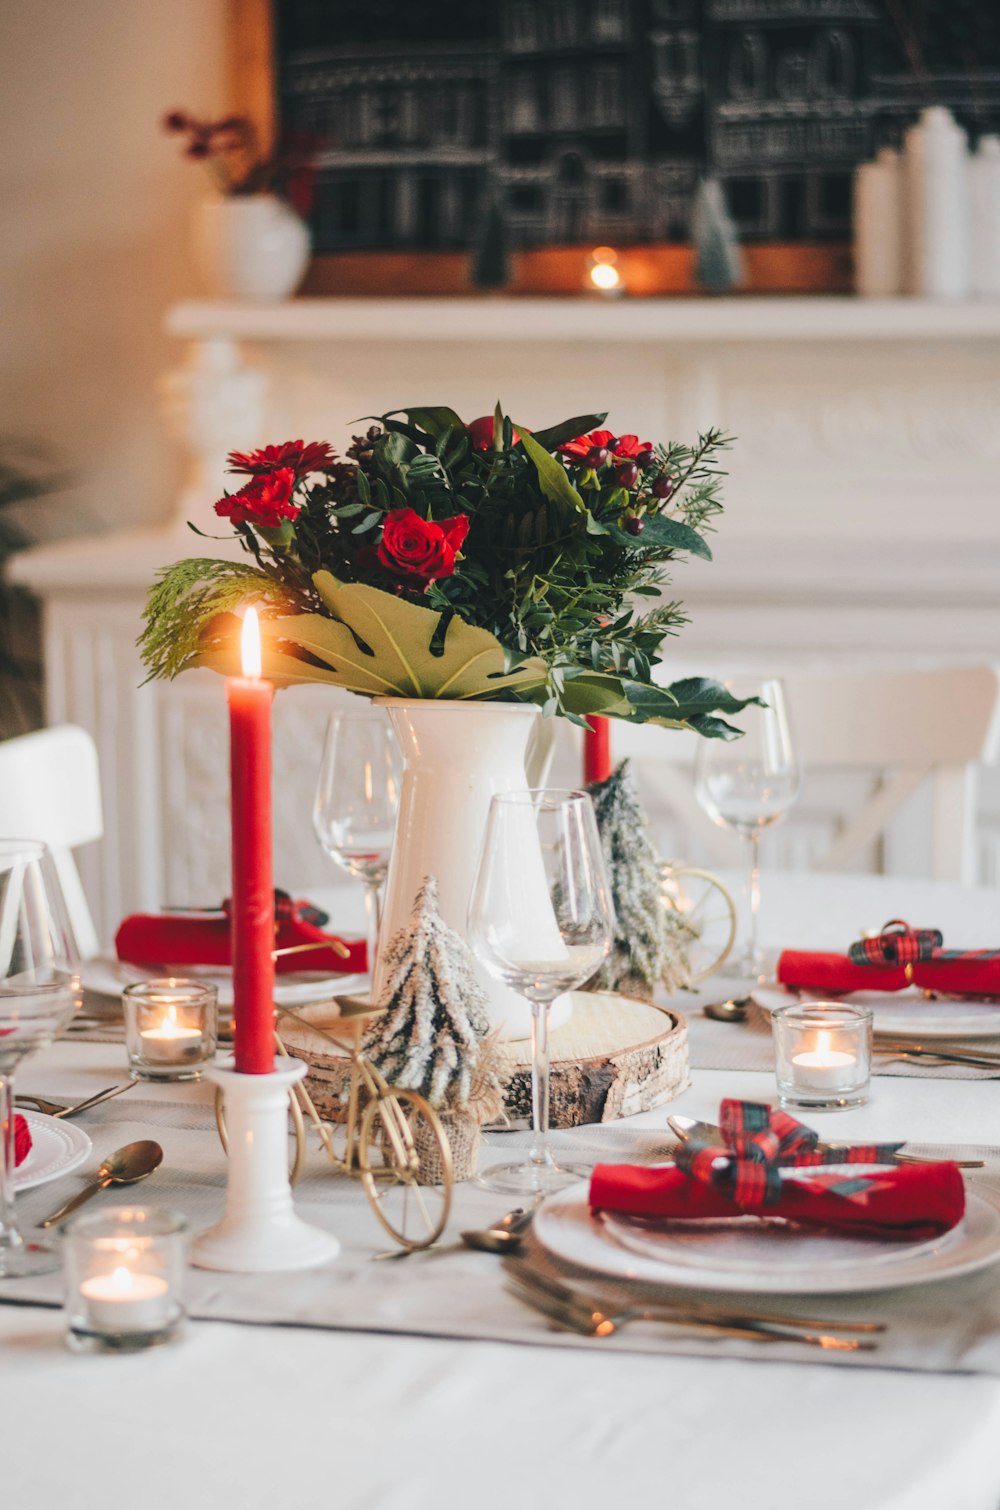 テーブルの上の白いセラミックの花瓶に赤と白のバラ